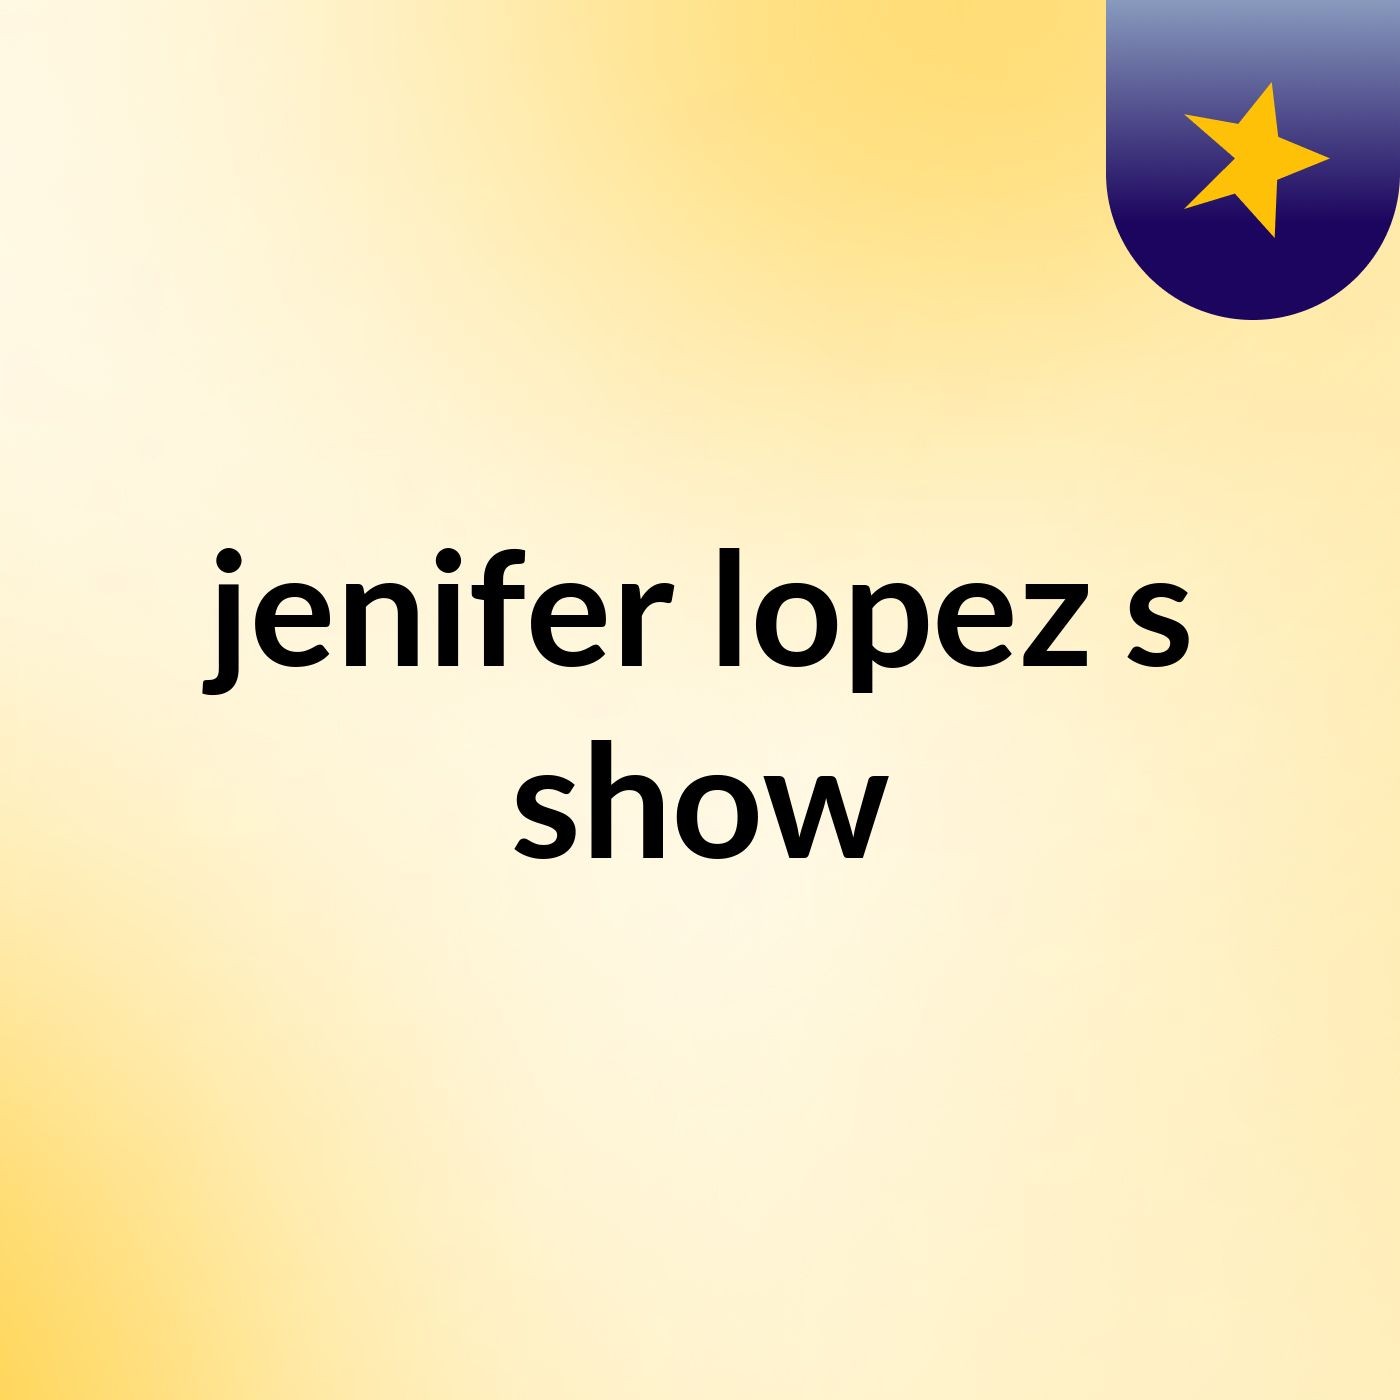 jenifer lopez's show